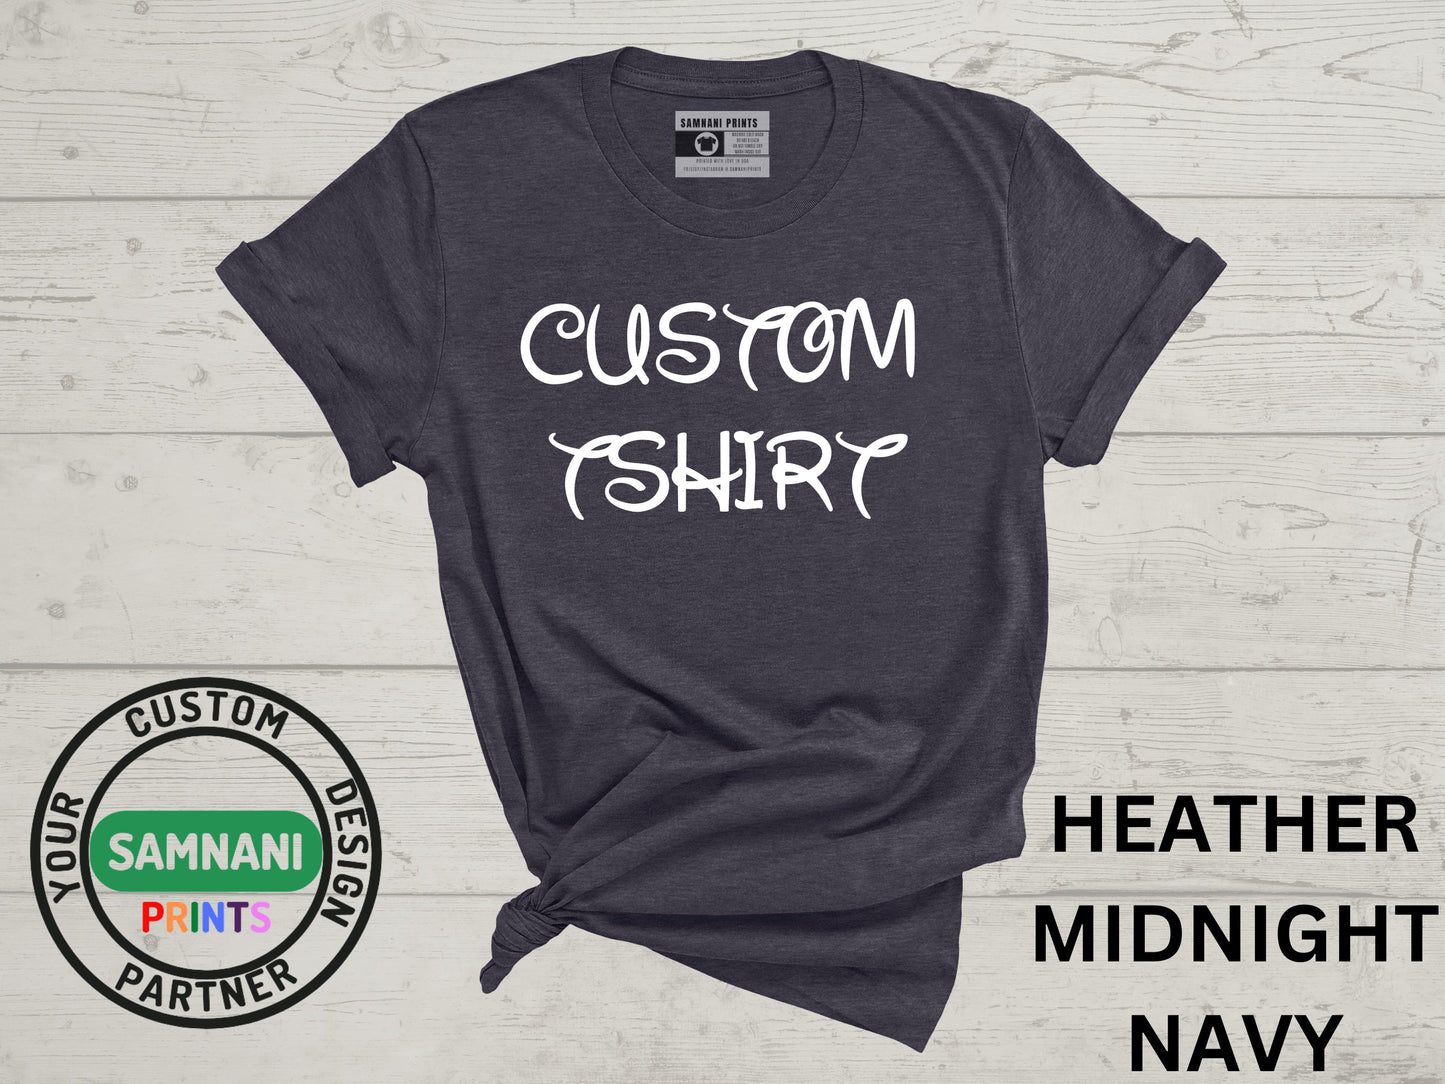 Personalized t-shirts, Customizable t-shirts, Made-to-order t-shirts, Custom graphic t-shirts, Custom t-shirts, Fast Shipping!